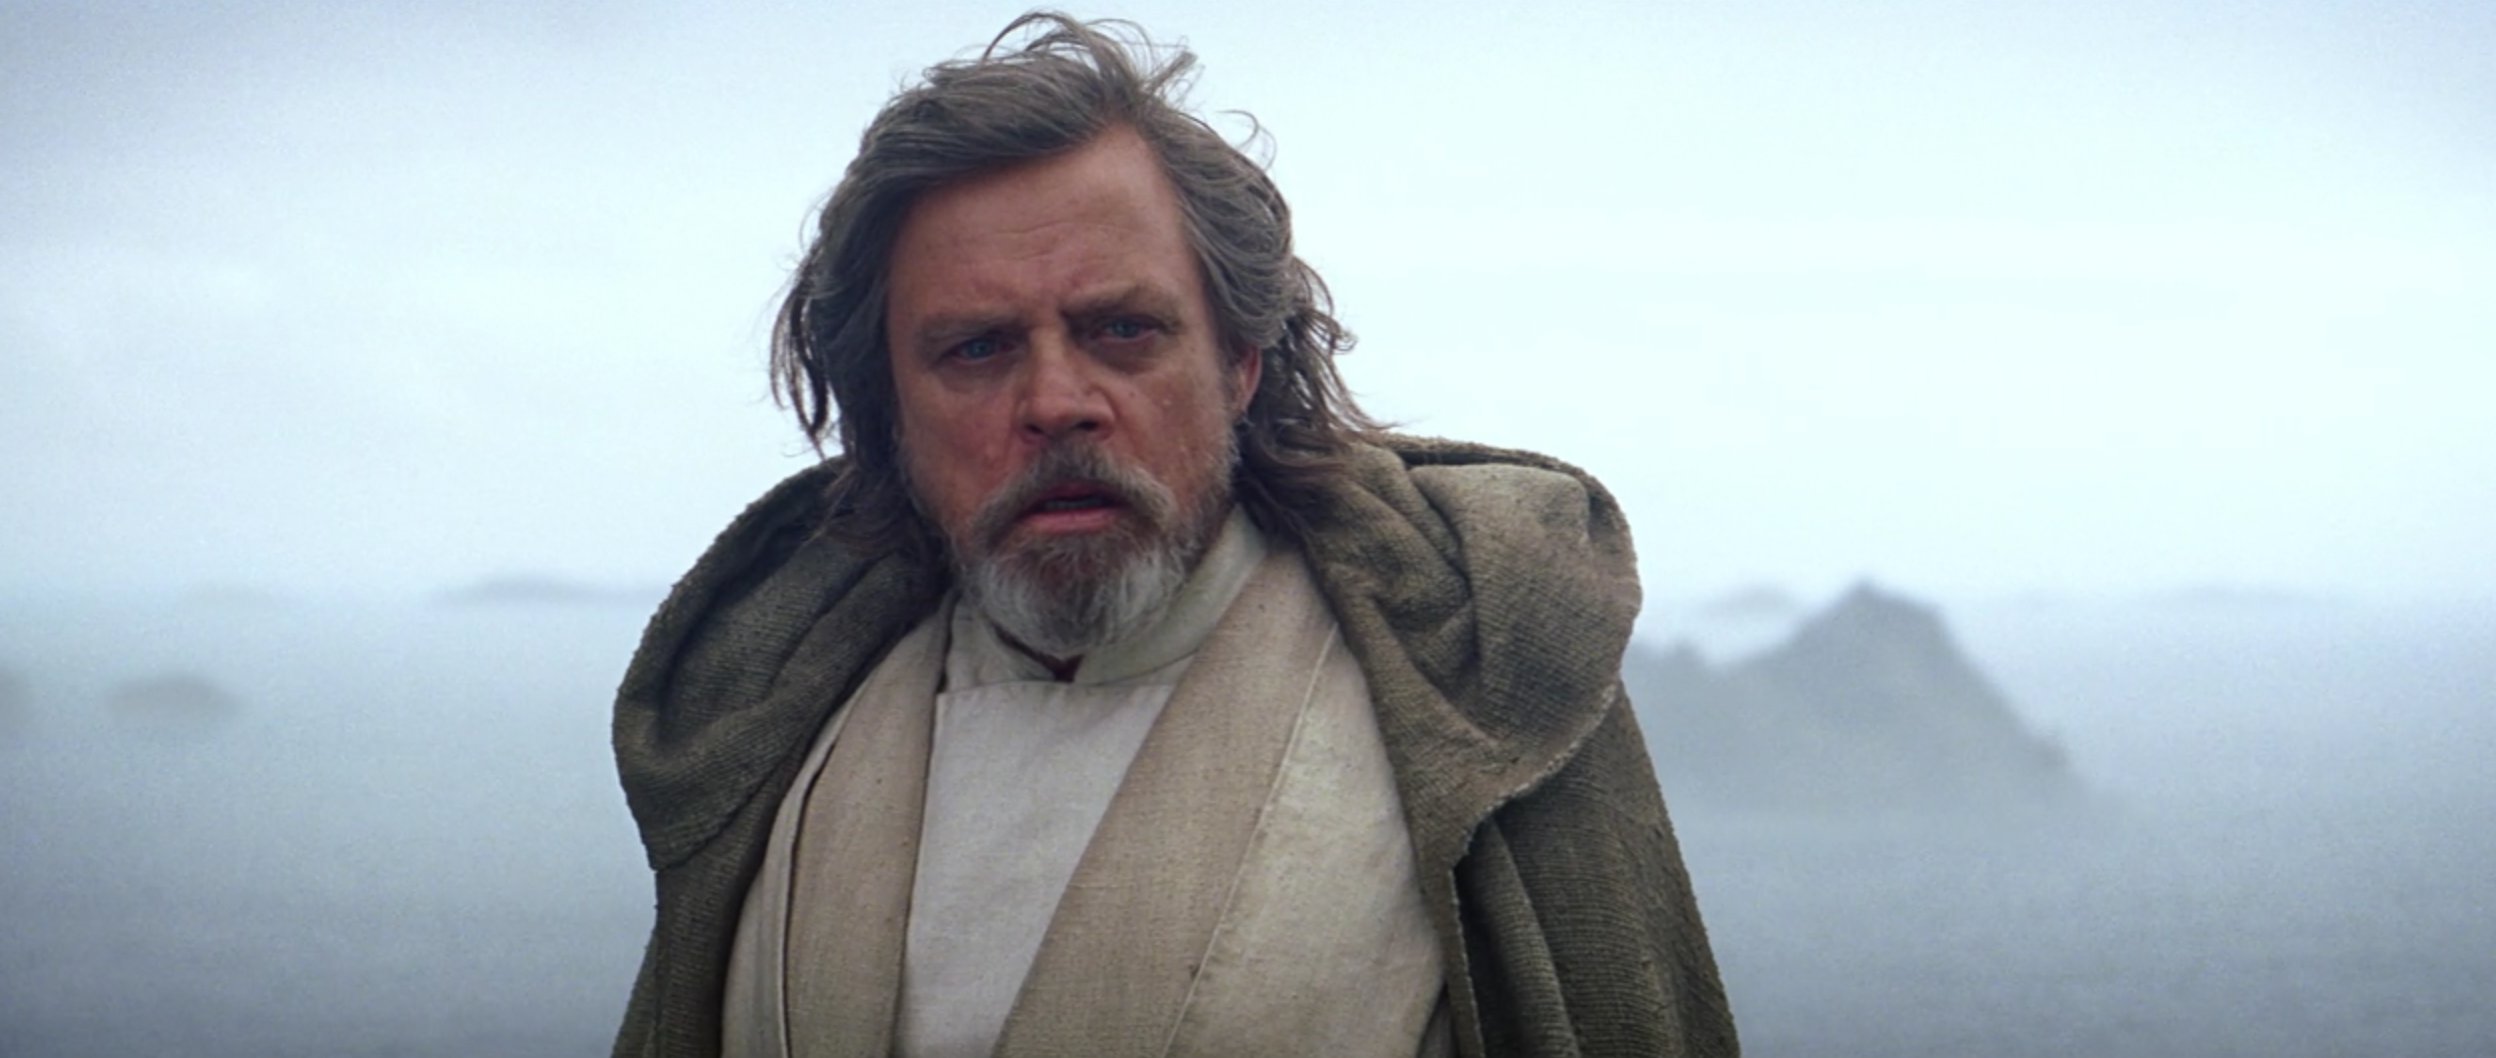 Saiba quais são as possíveis primeiras palavras de Luke em Star Wars: Os Últimos Jedi